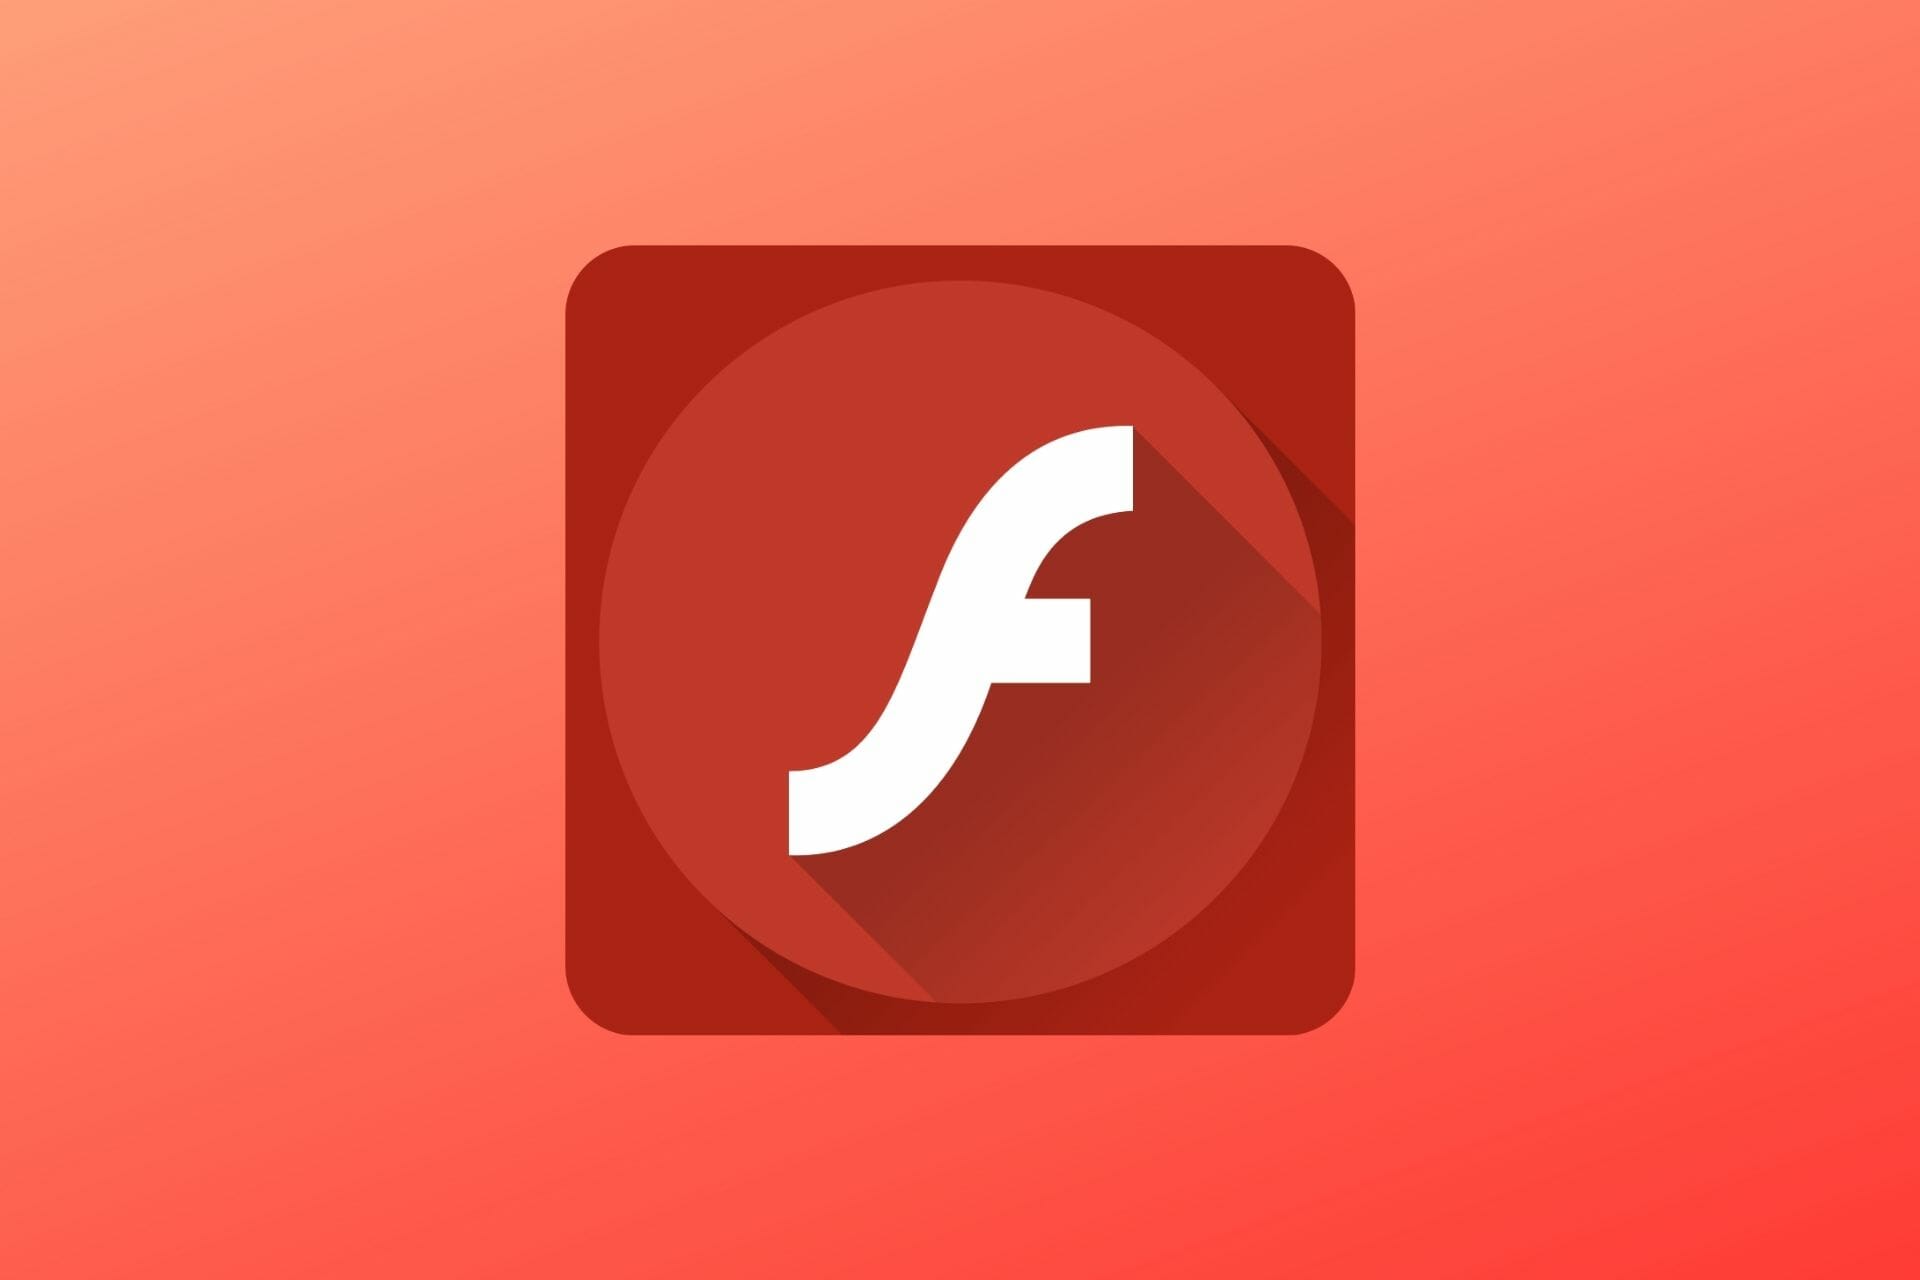 adobe flashplayer free download windows 10